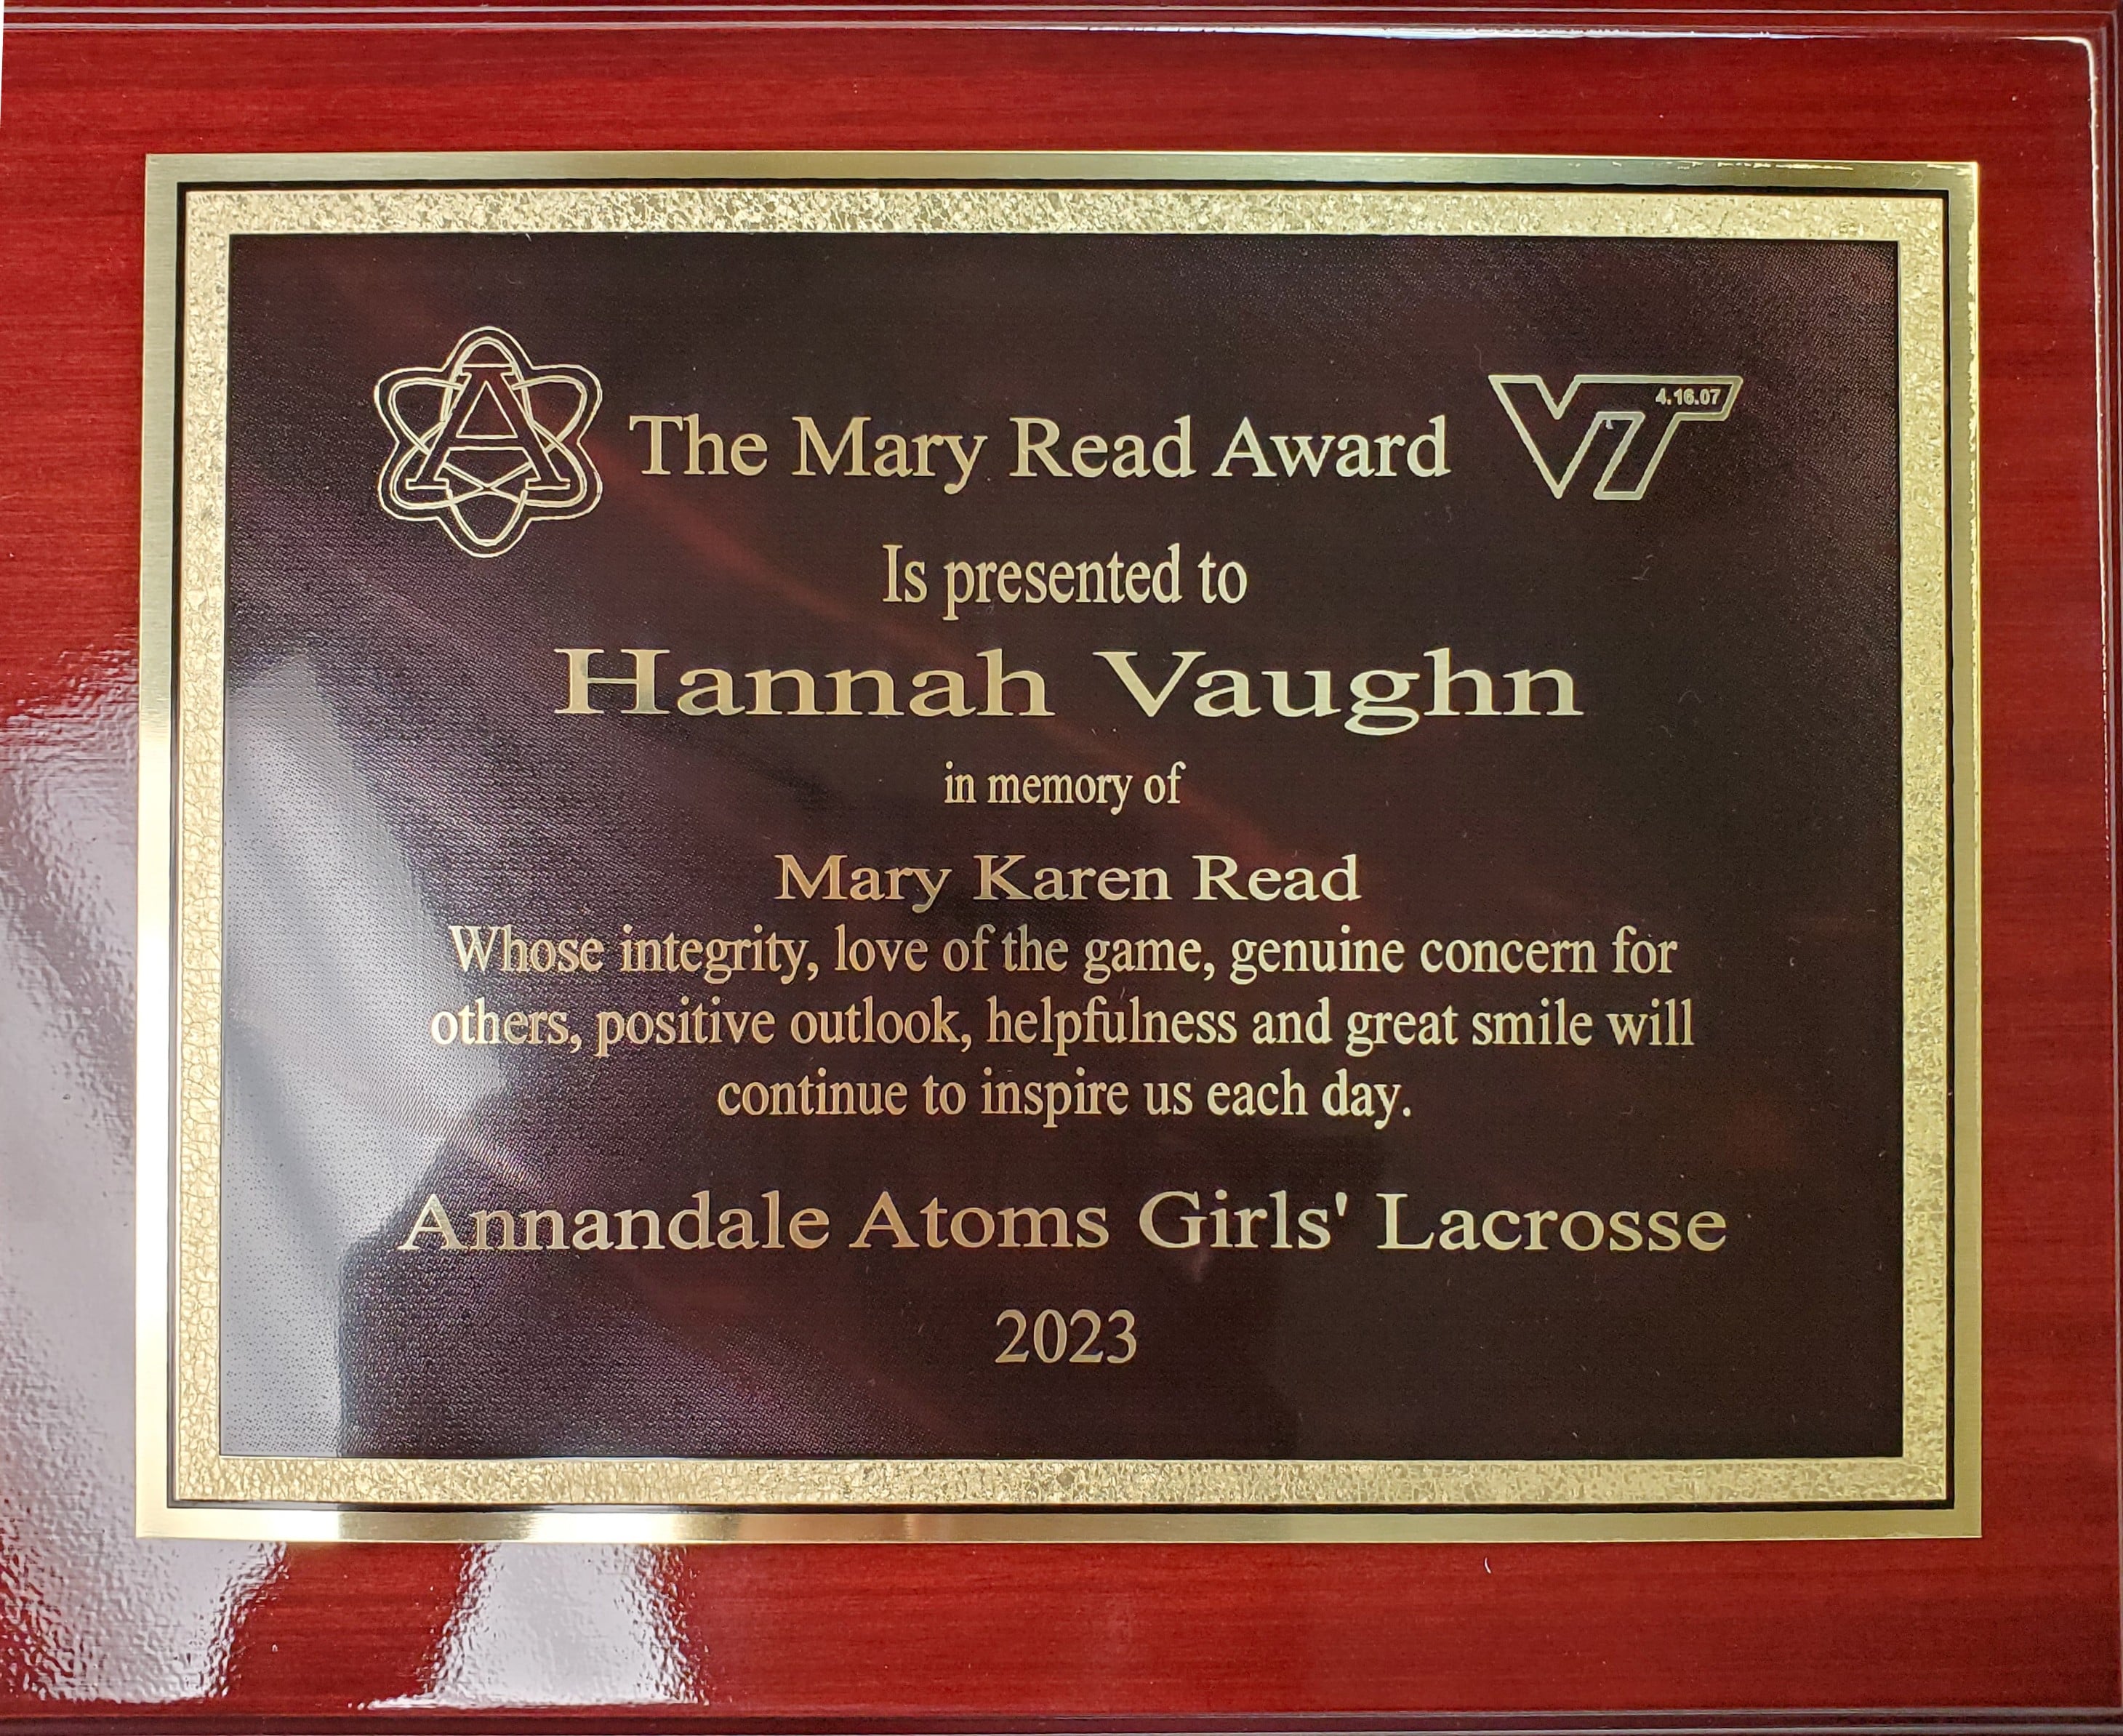 The Mary Read Award